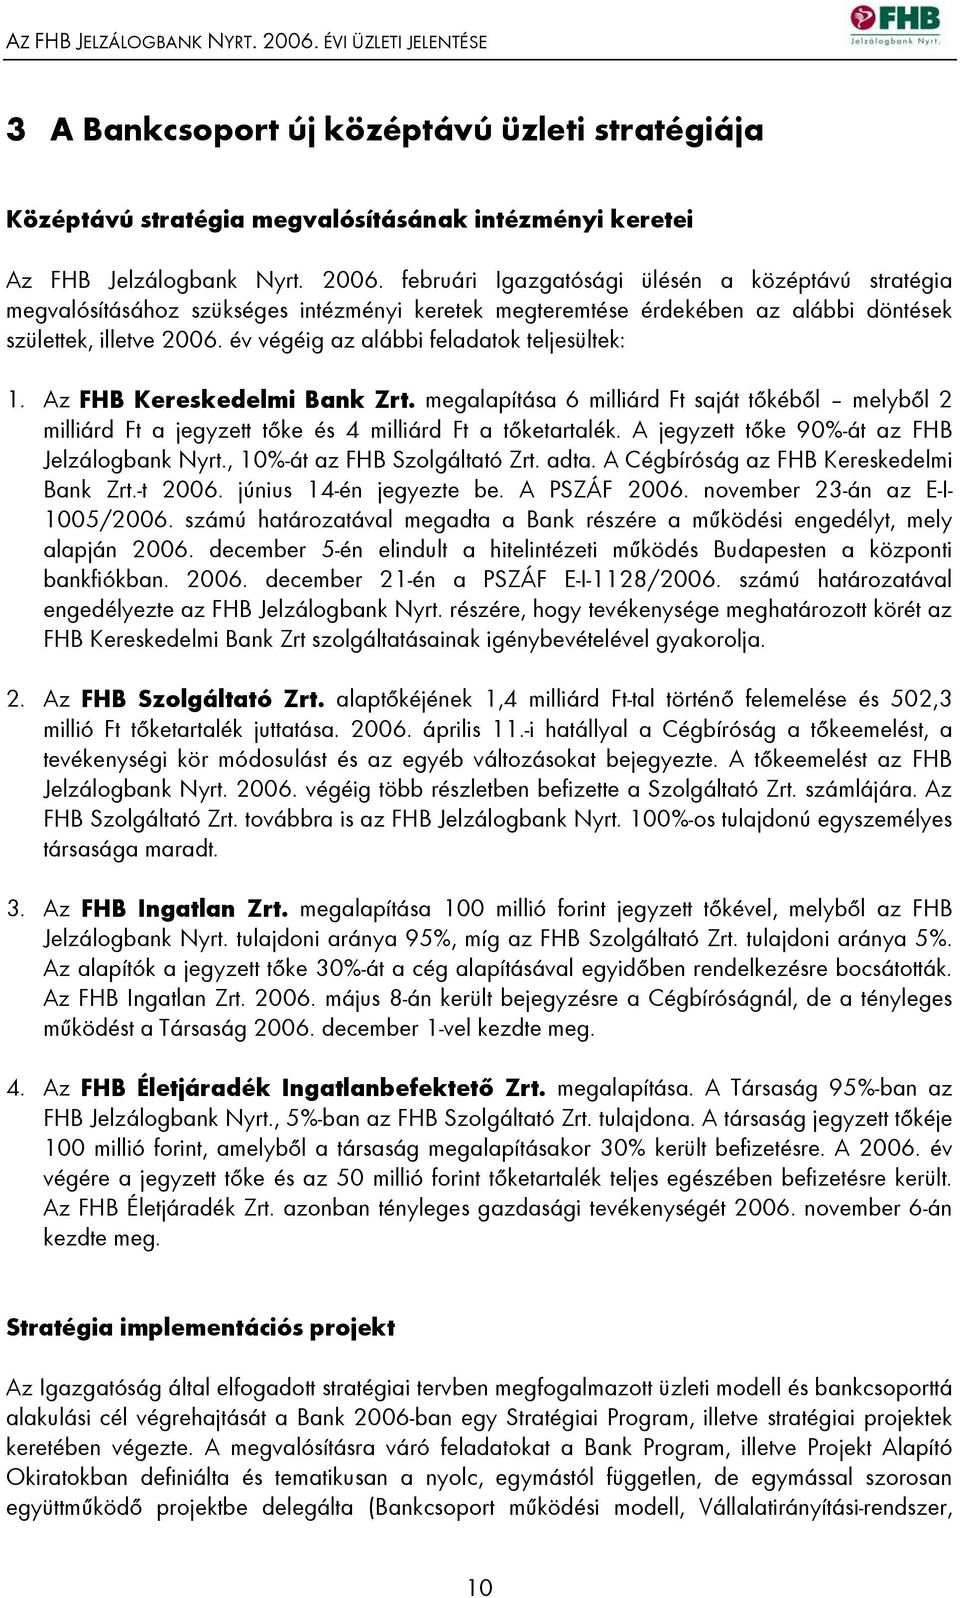 A jegyzett tőke 90%-át az FHB Jelzálogbank Nyrt., 10%-át az FHB Szolgáltató Zrt. adta. A Cégbíróság az FHB Kereskedelmi Bank Zrt.-t 2006. június 14-én jegyezte be. A PSZÁF 2006.